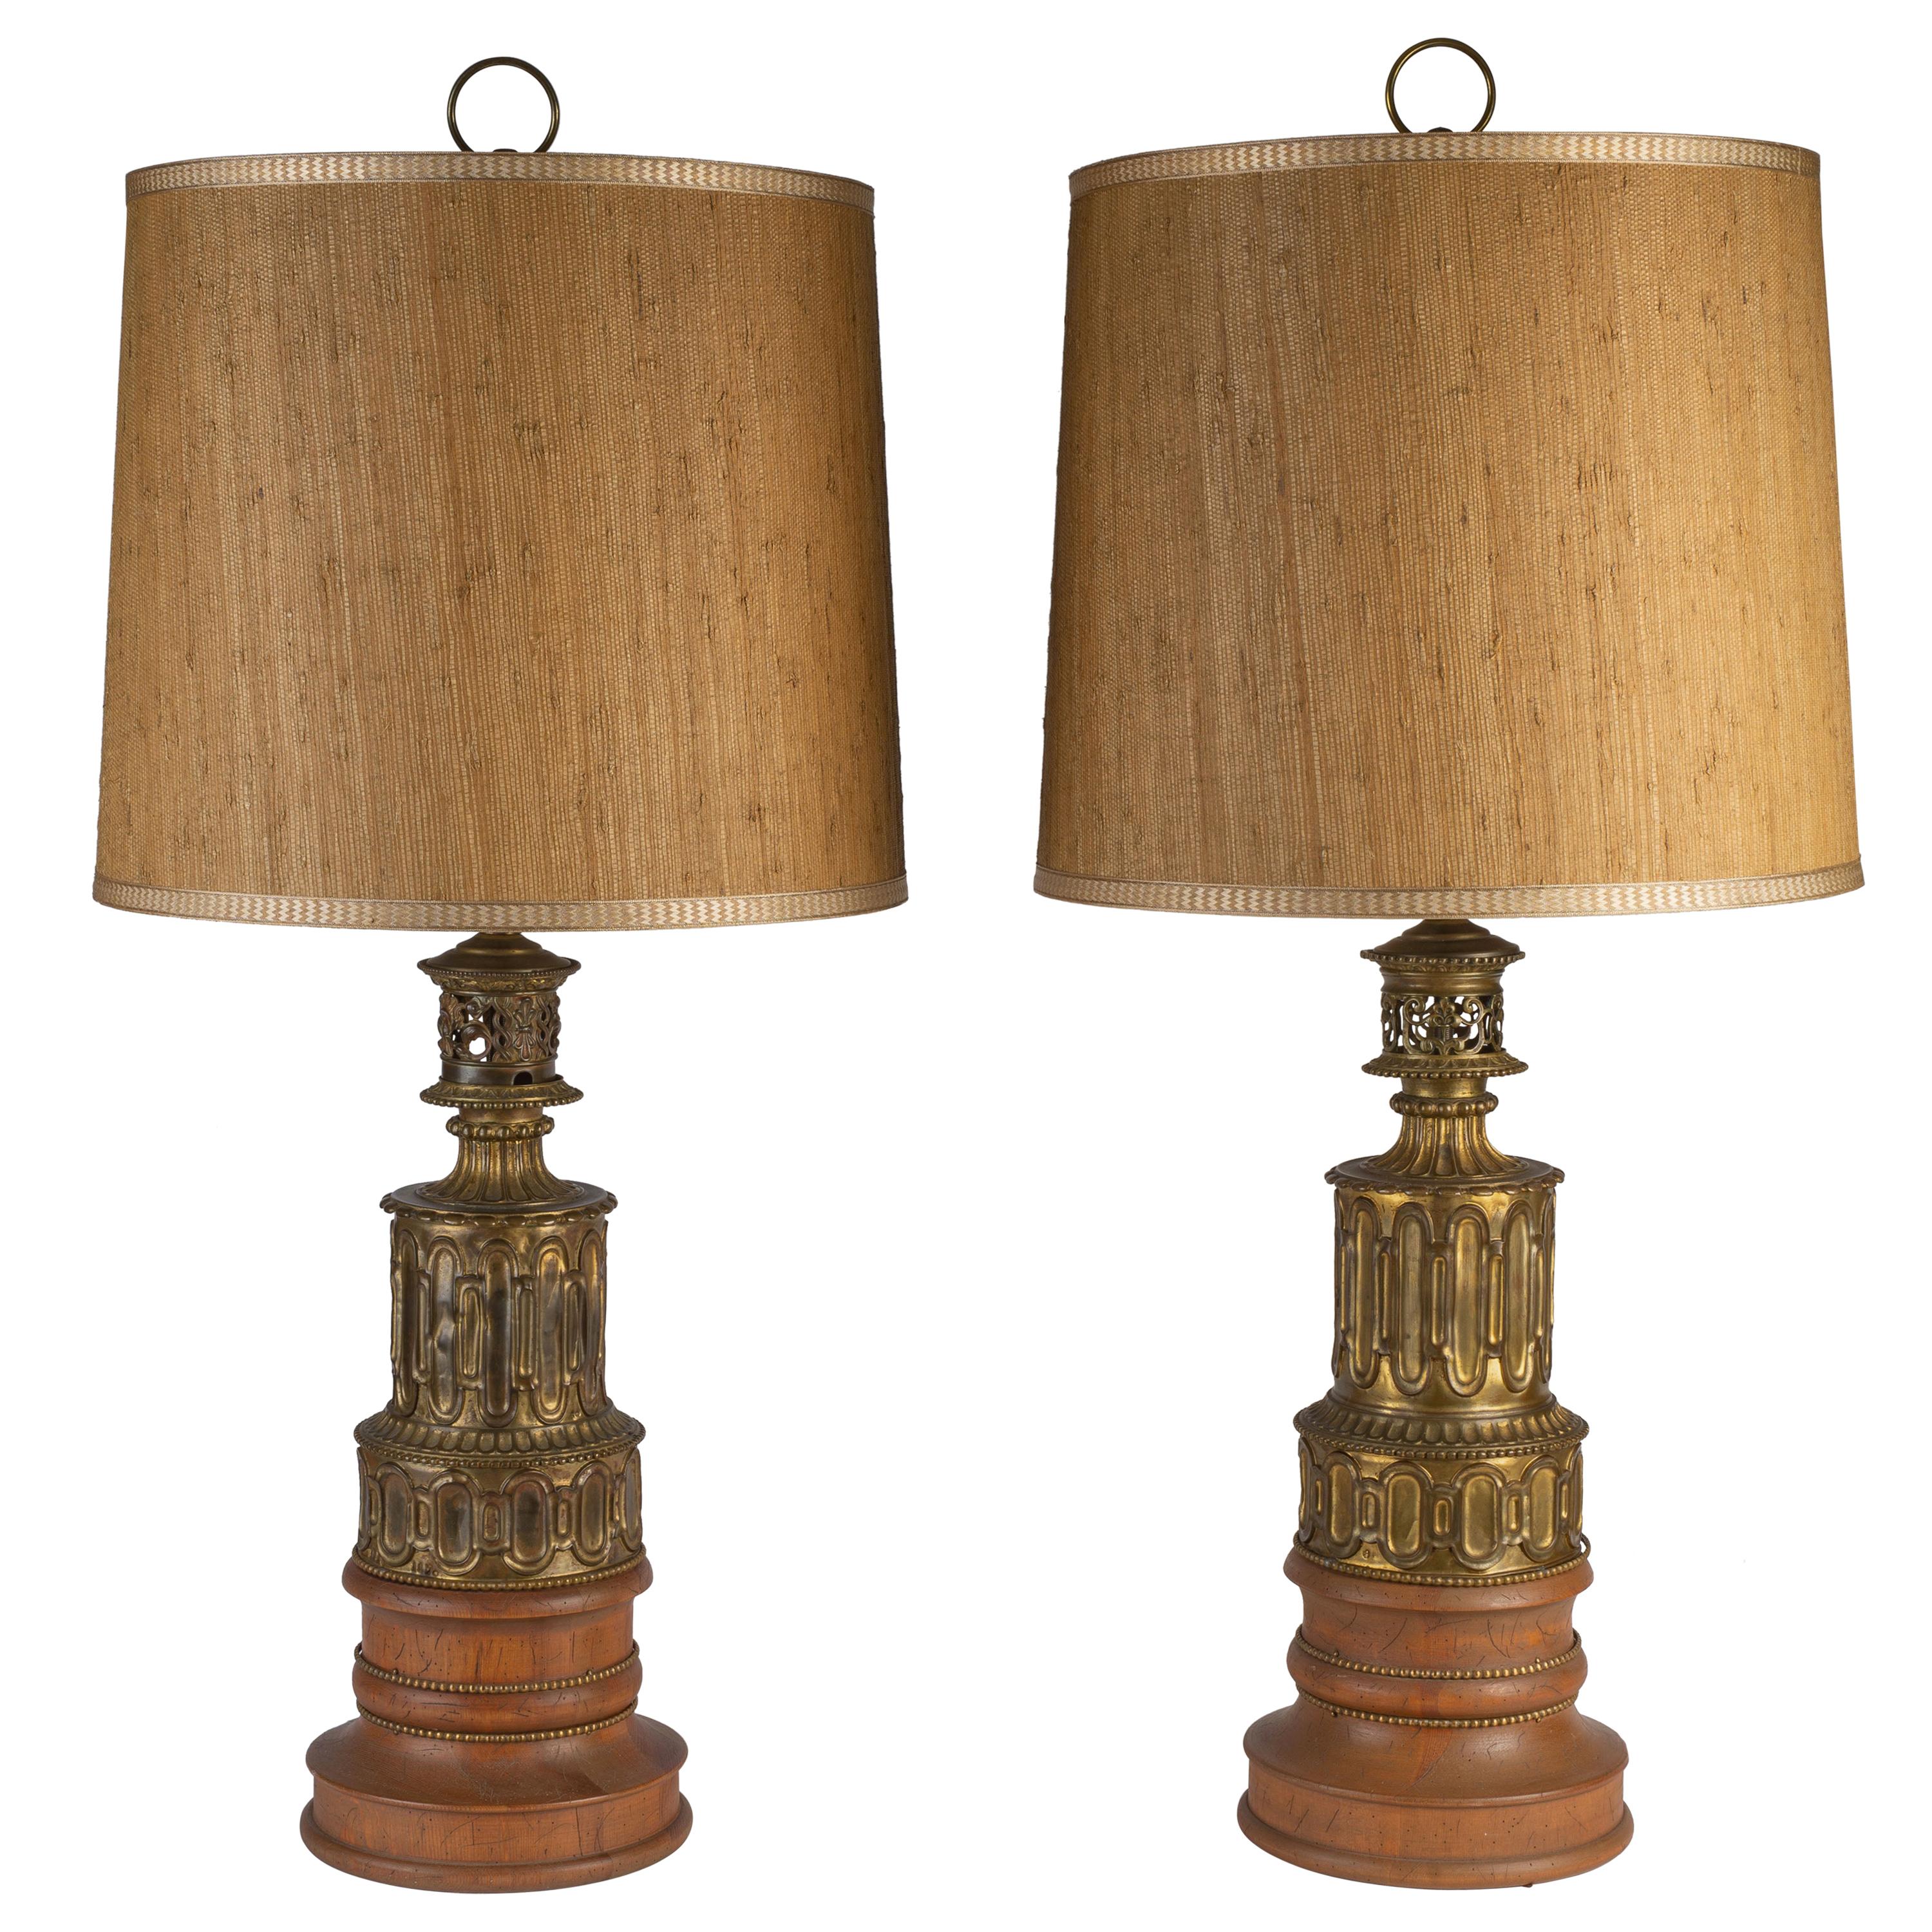 Paire de lampes à huile en bois et laiton de style néo-gothique français